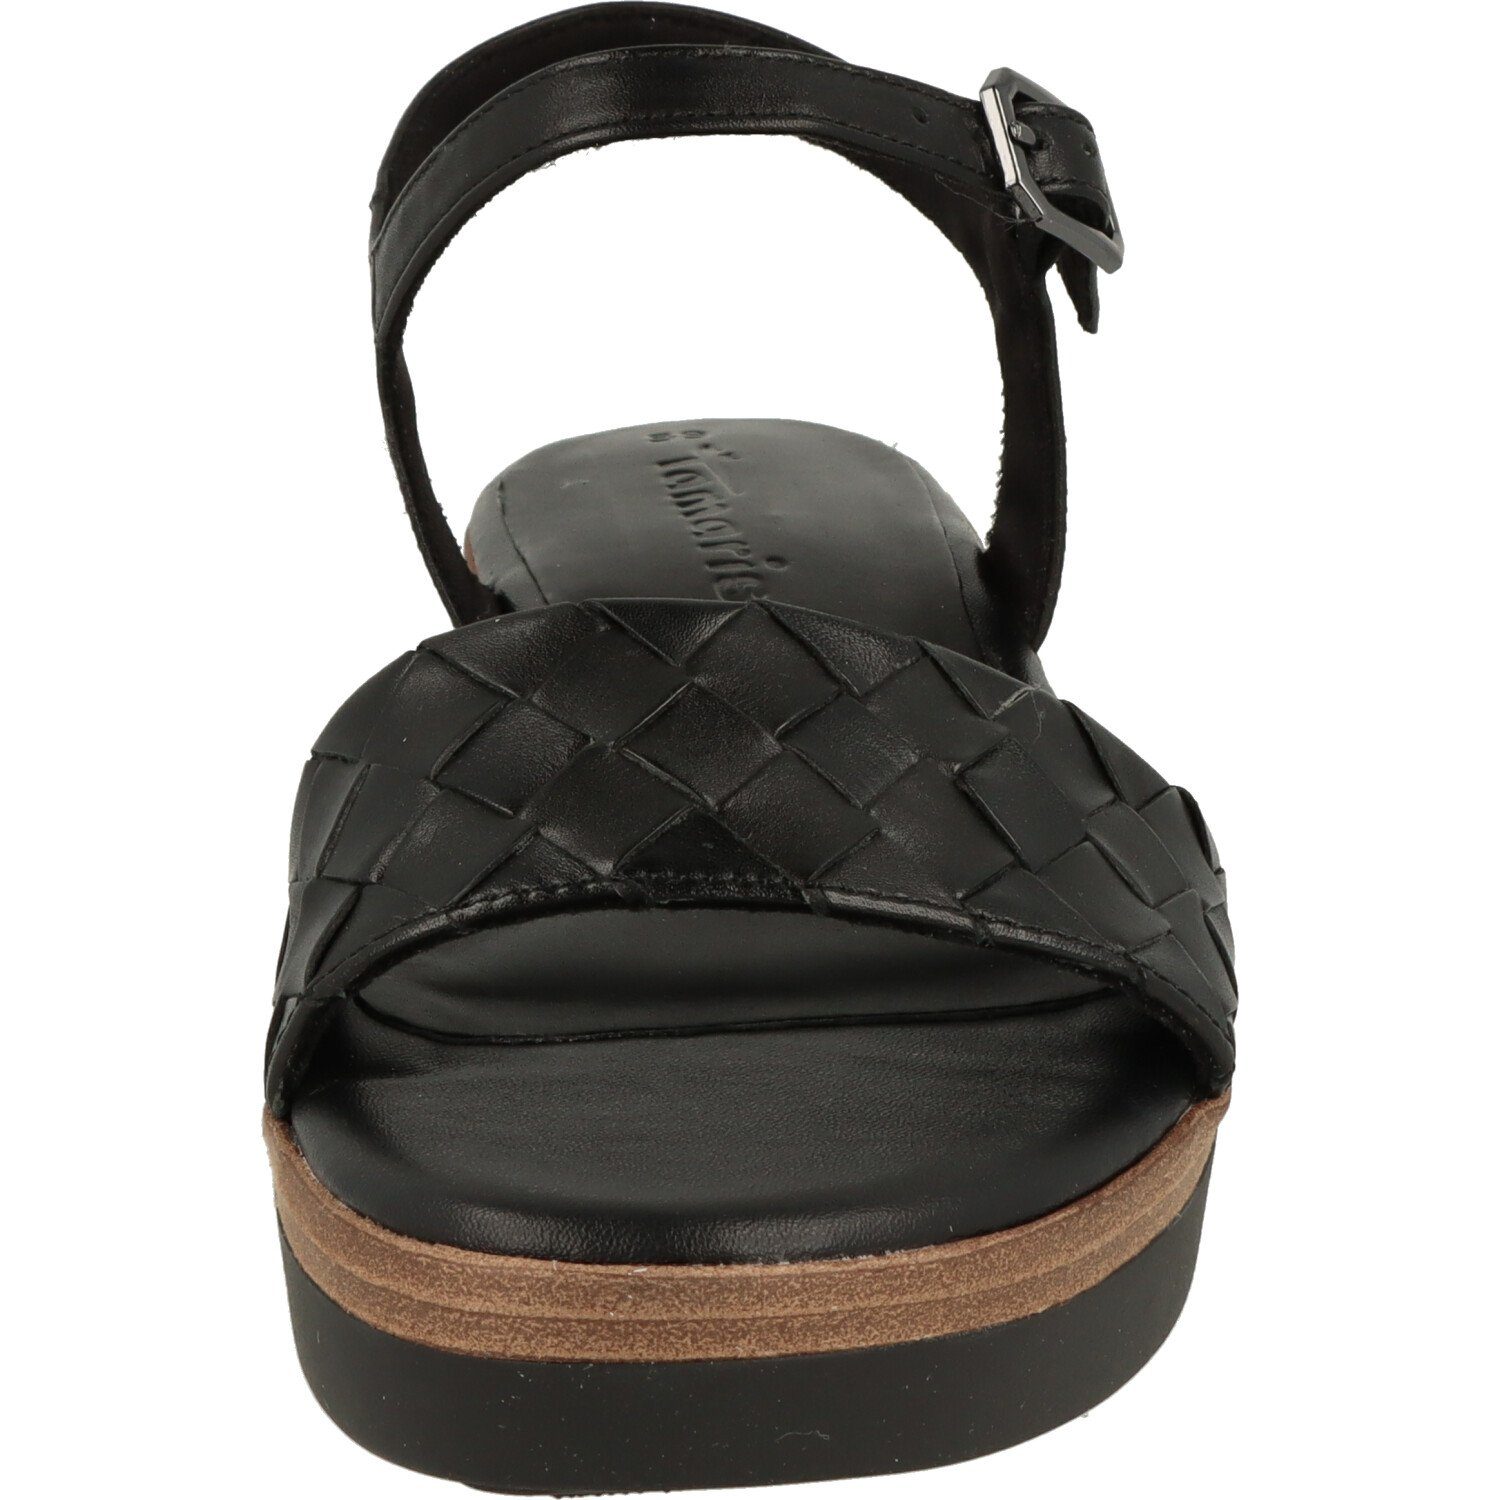 Sandalette Damen Schuhe Black Leder Tamaris Riemchen Sandalette 1-28216-20 Komfort